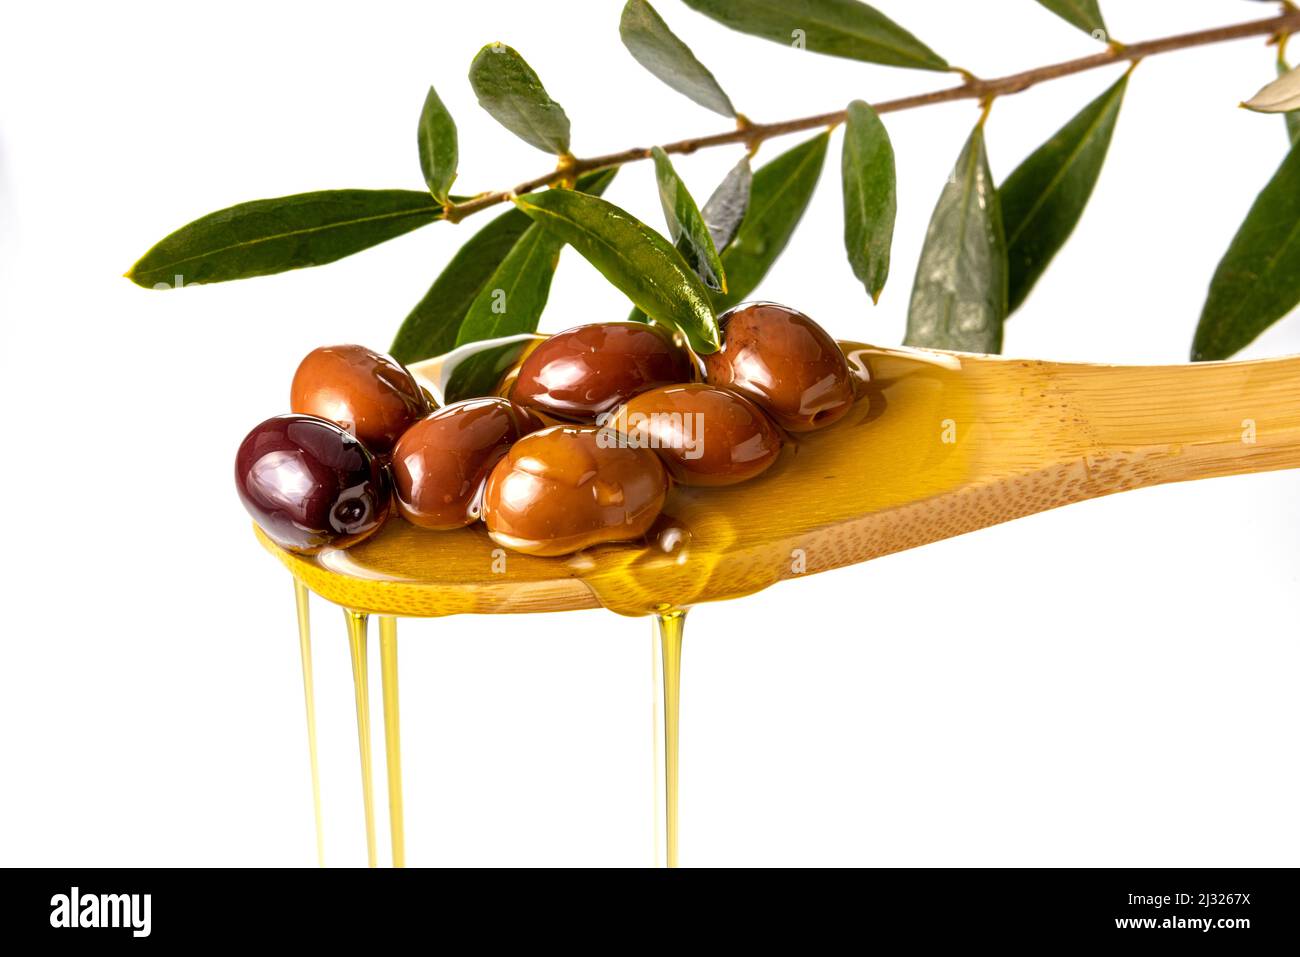 Huile d'olive extra vierge s'écoulant des olives sur une cuillère en bois avec branche de feuille d'olive, isolée sur blanc Banque D'Images